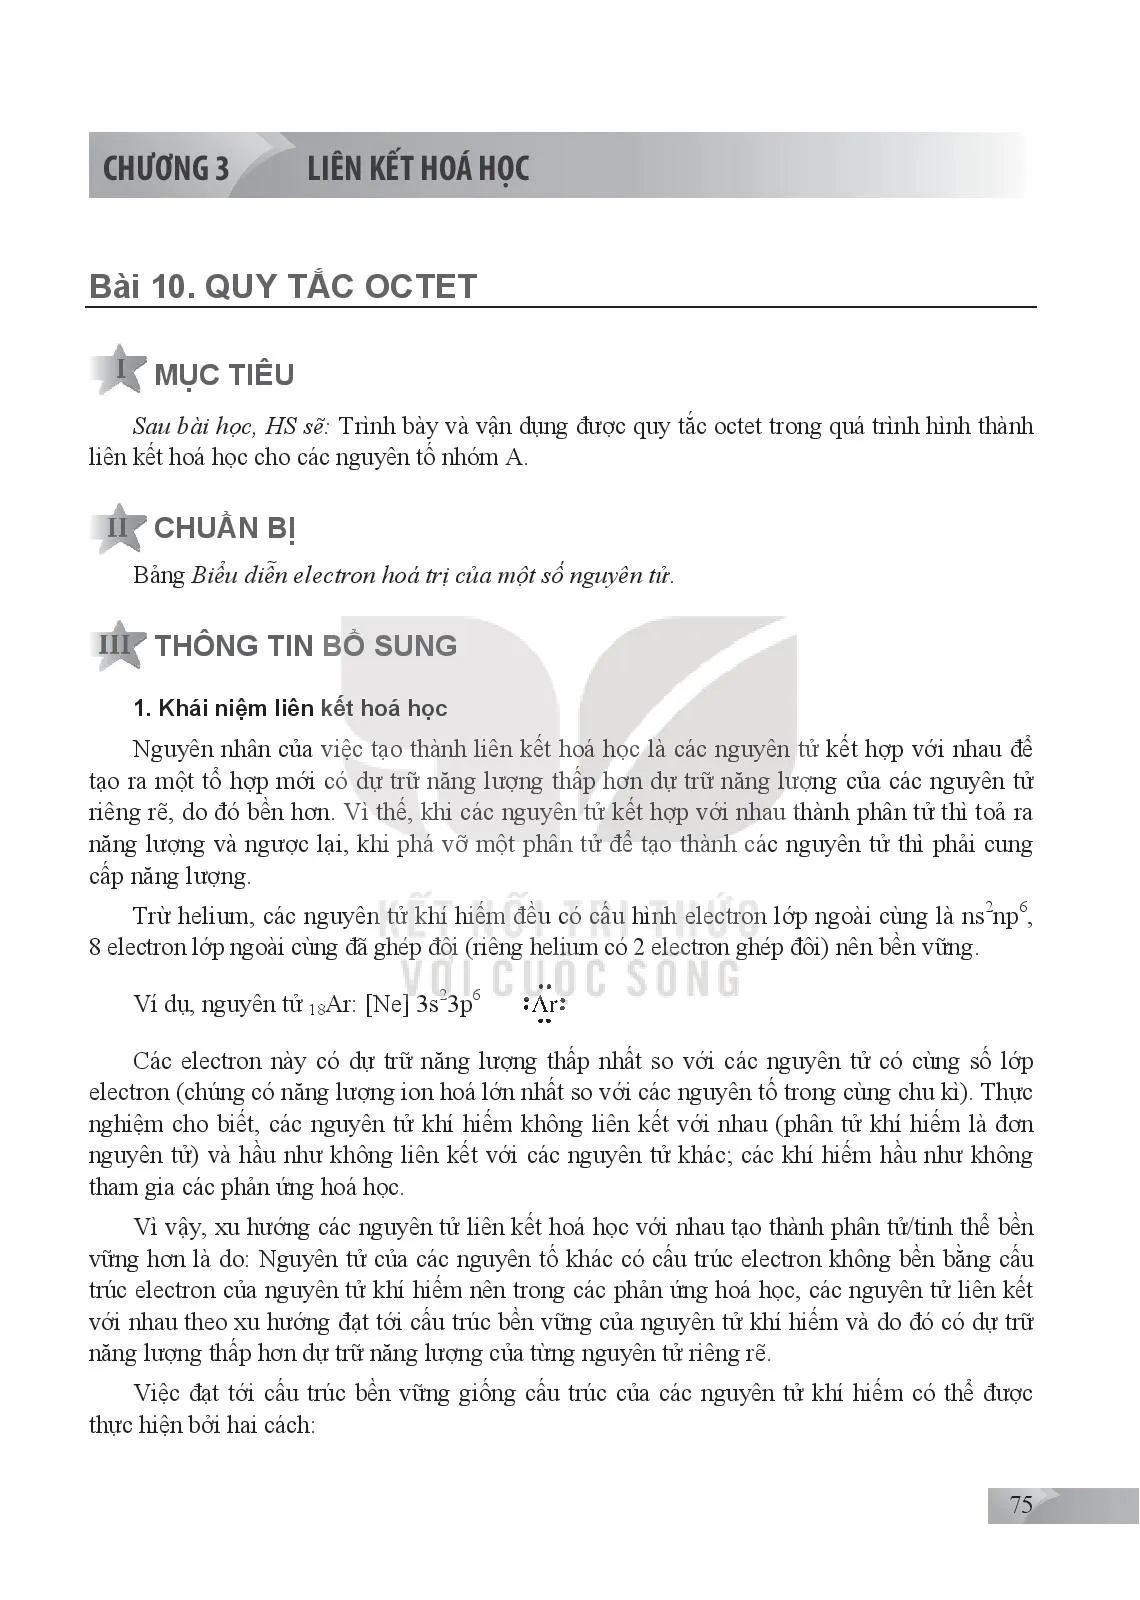 Bài 10. Quy tắc octet